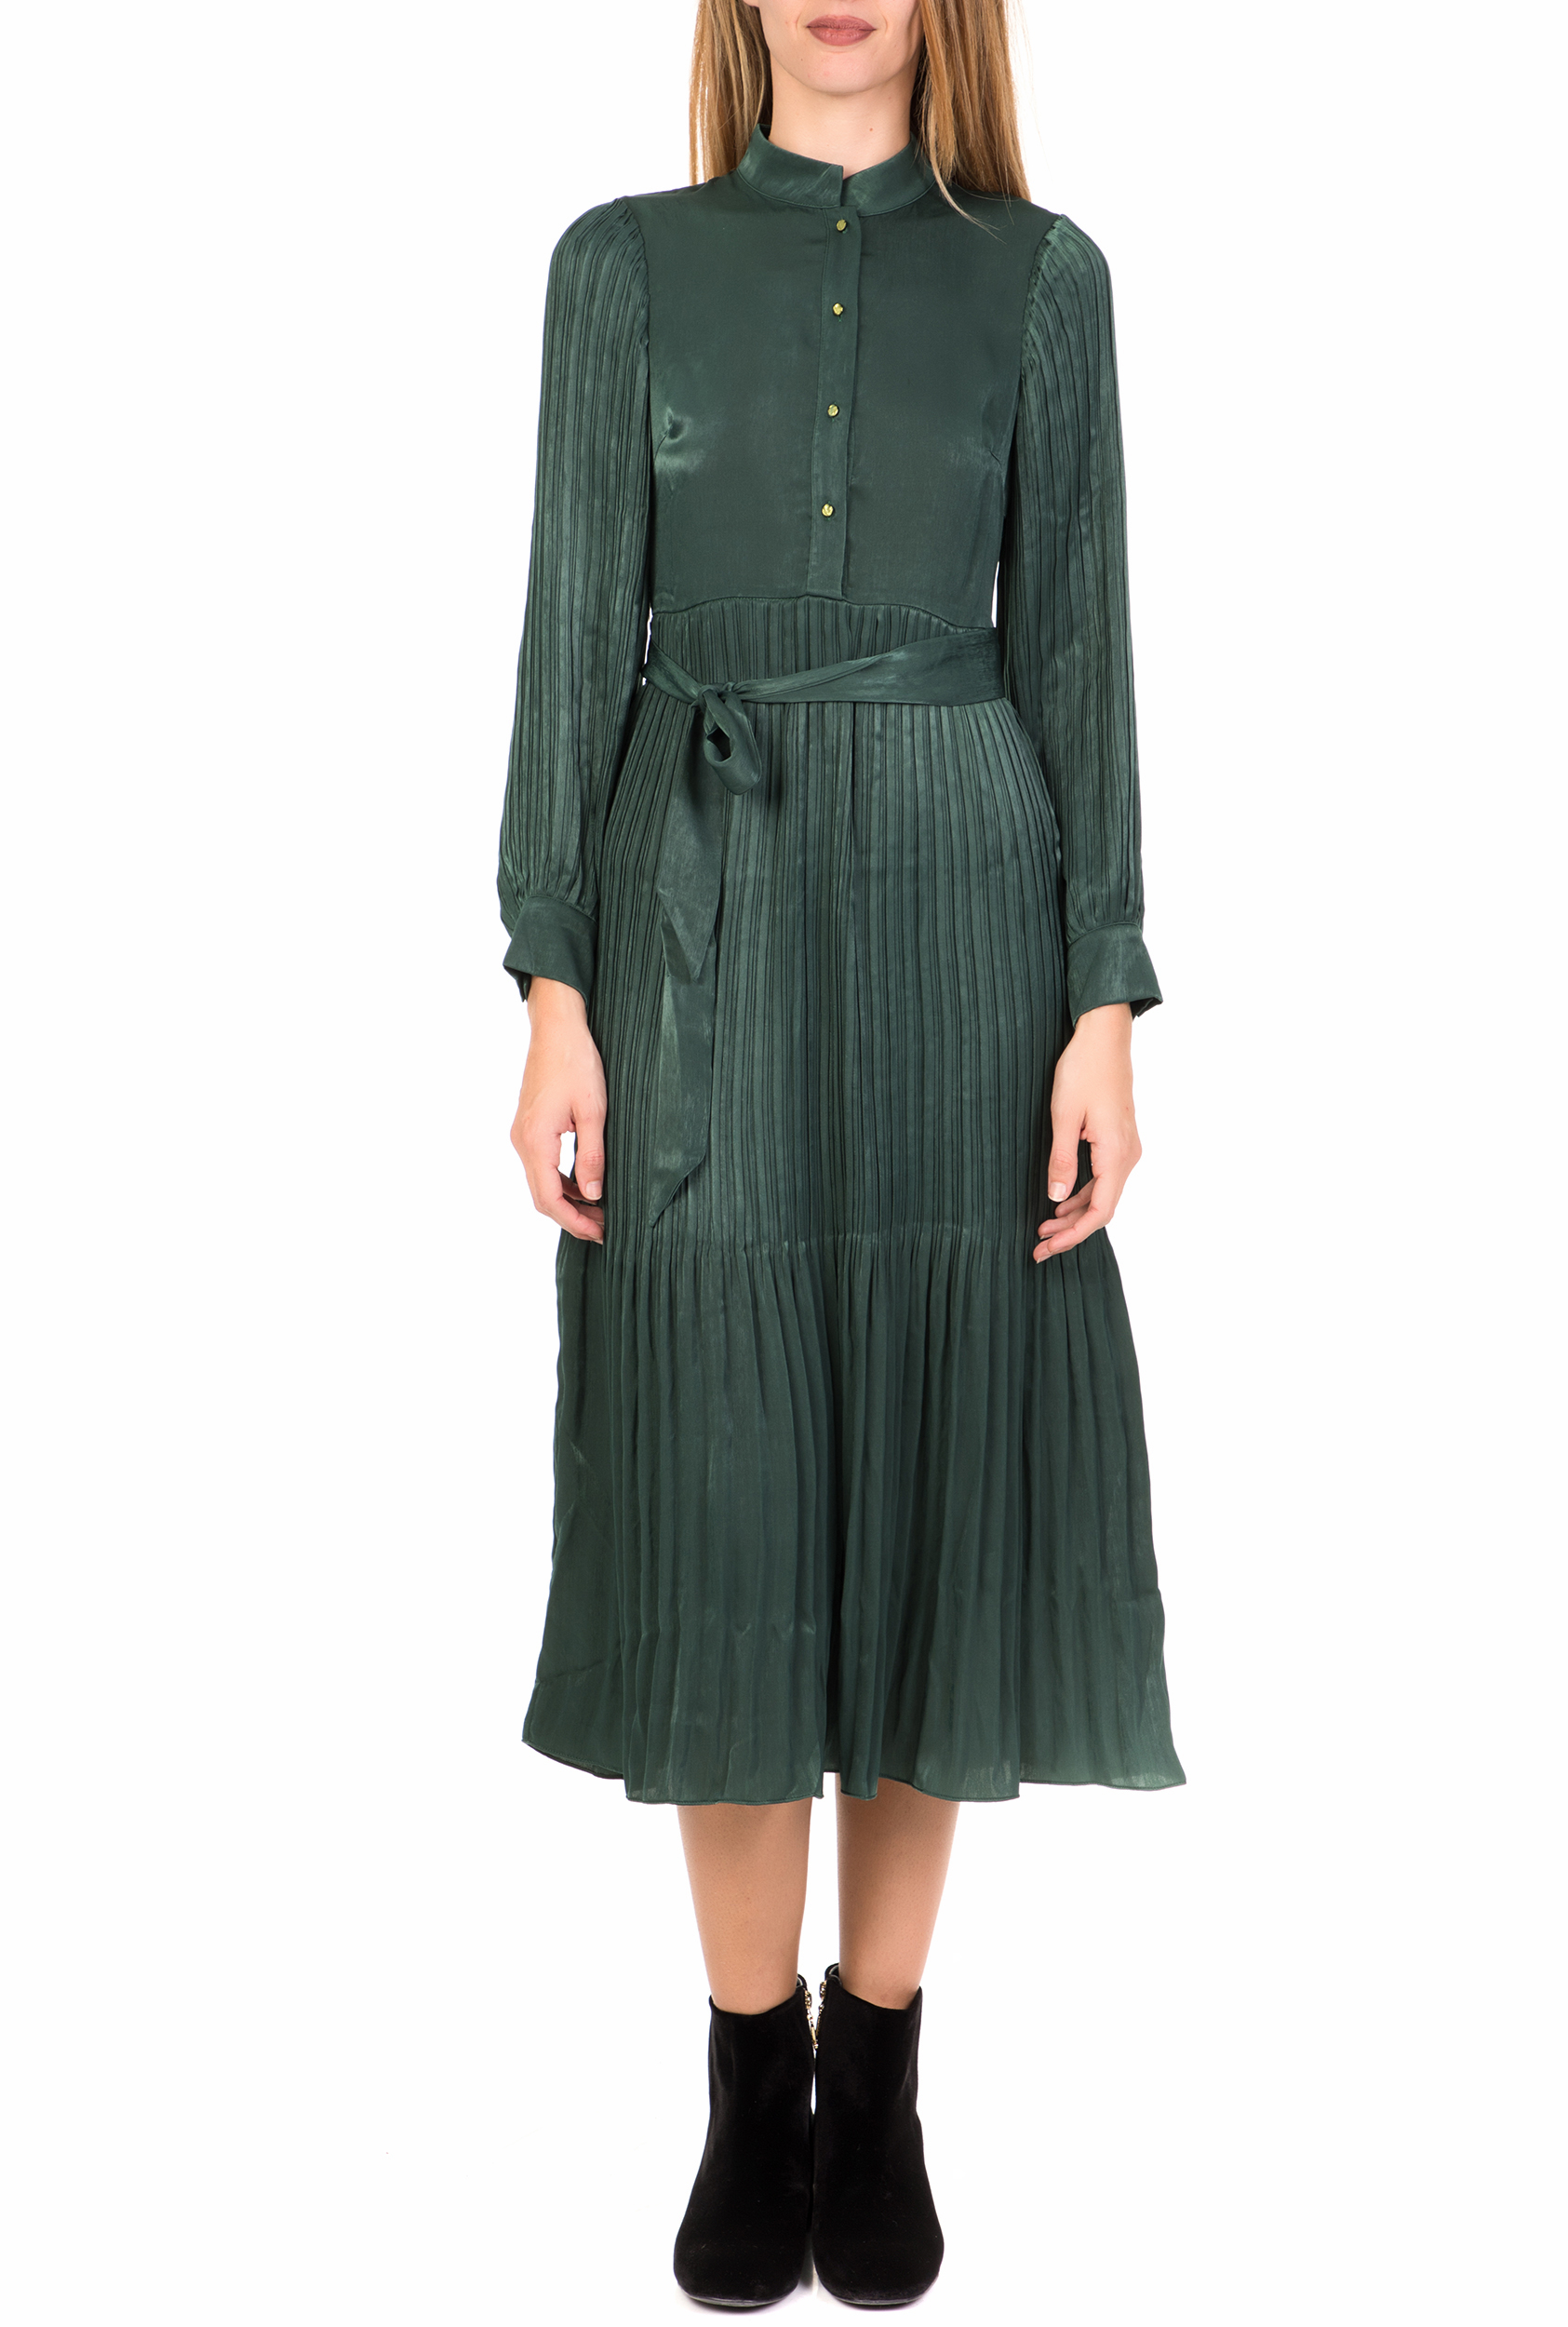 Γυναικεία/Ρούχα/Φόρεματα/Μέχρι το γόνατο TRAFFIC PEOPLE - Γυναικείο midi φόρεμα TRAFFIC PEOPLE It's All About Eve Falls πράσινο